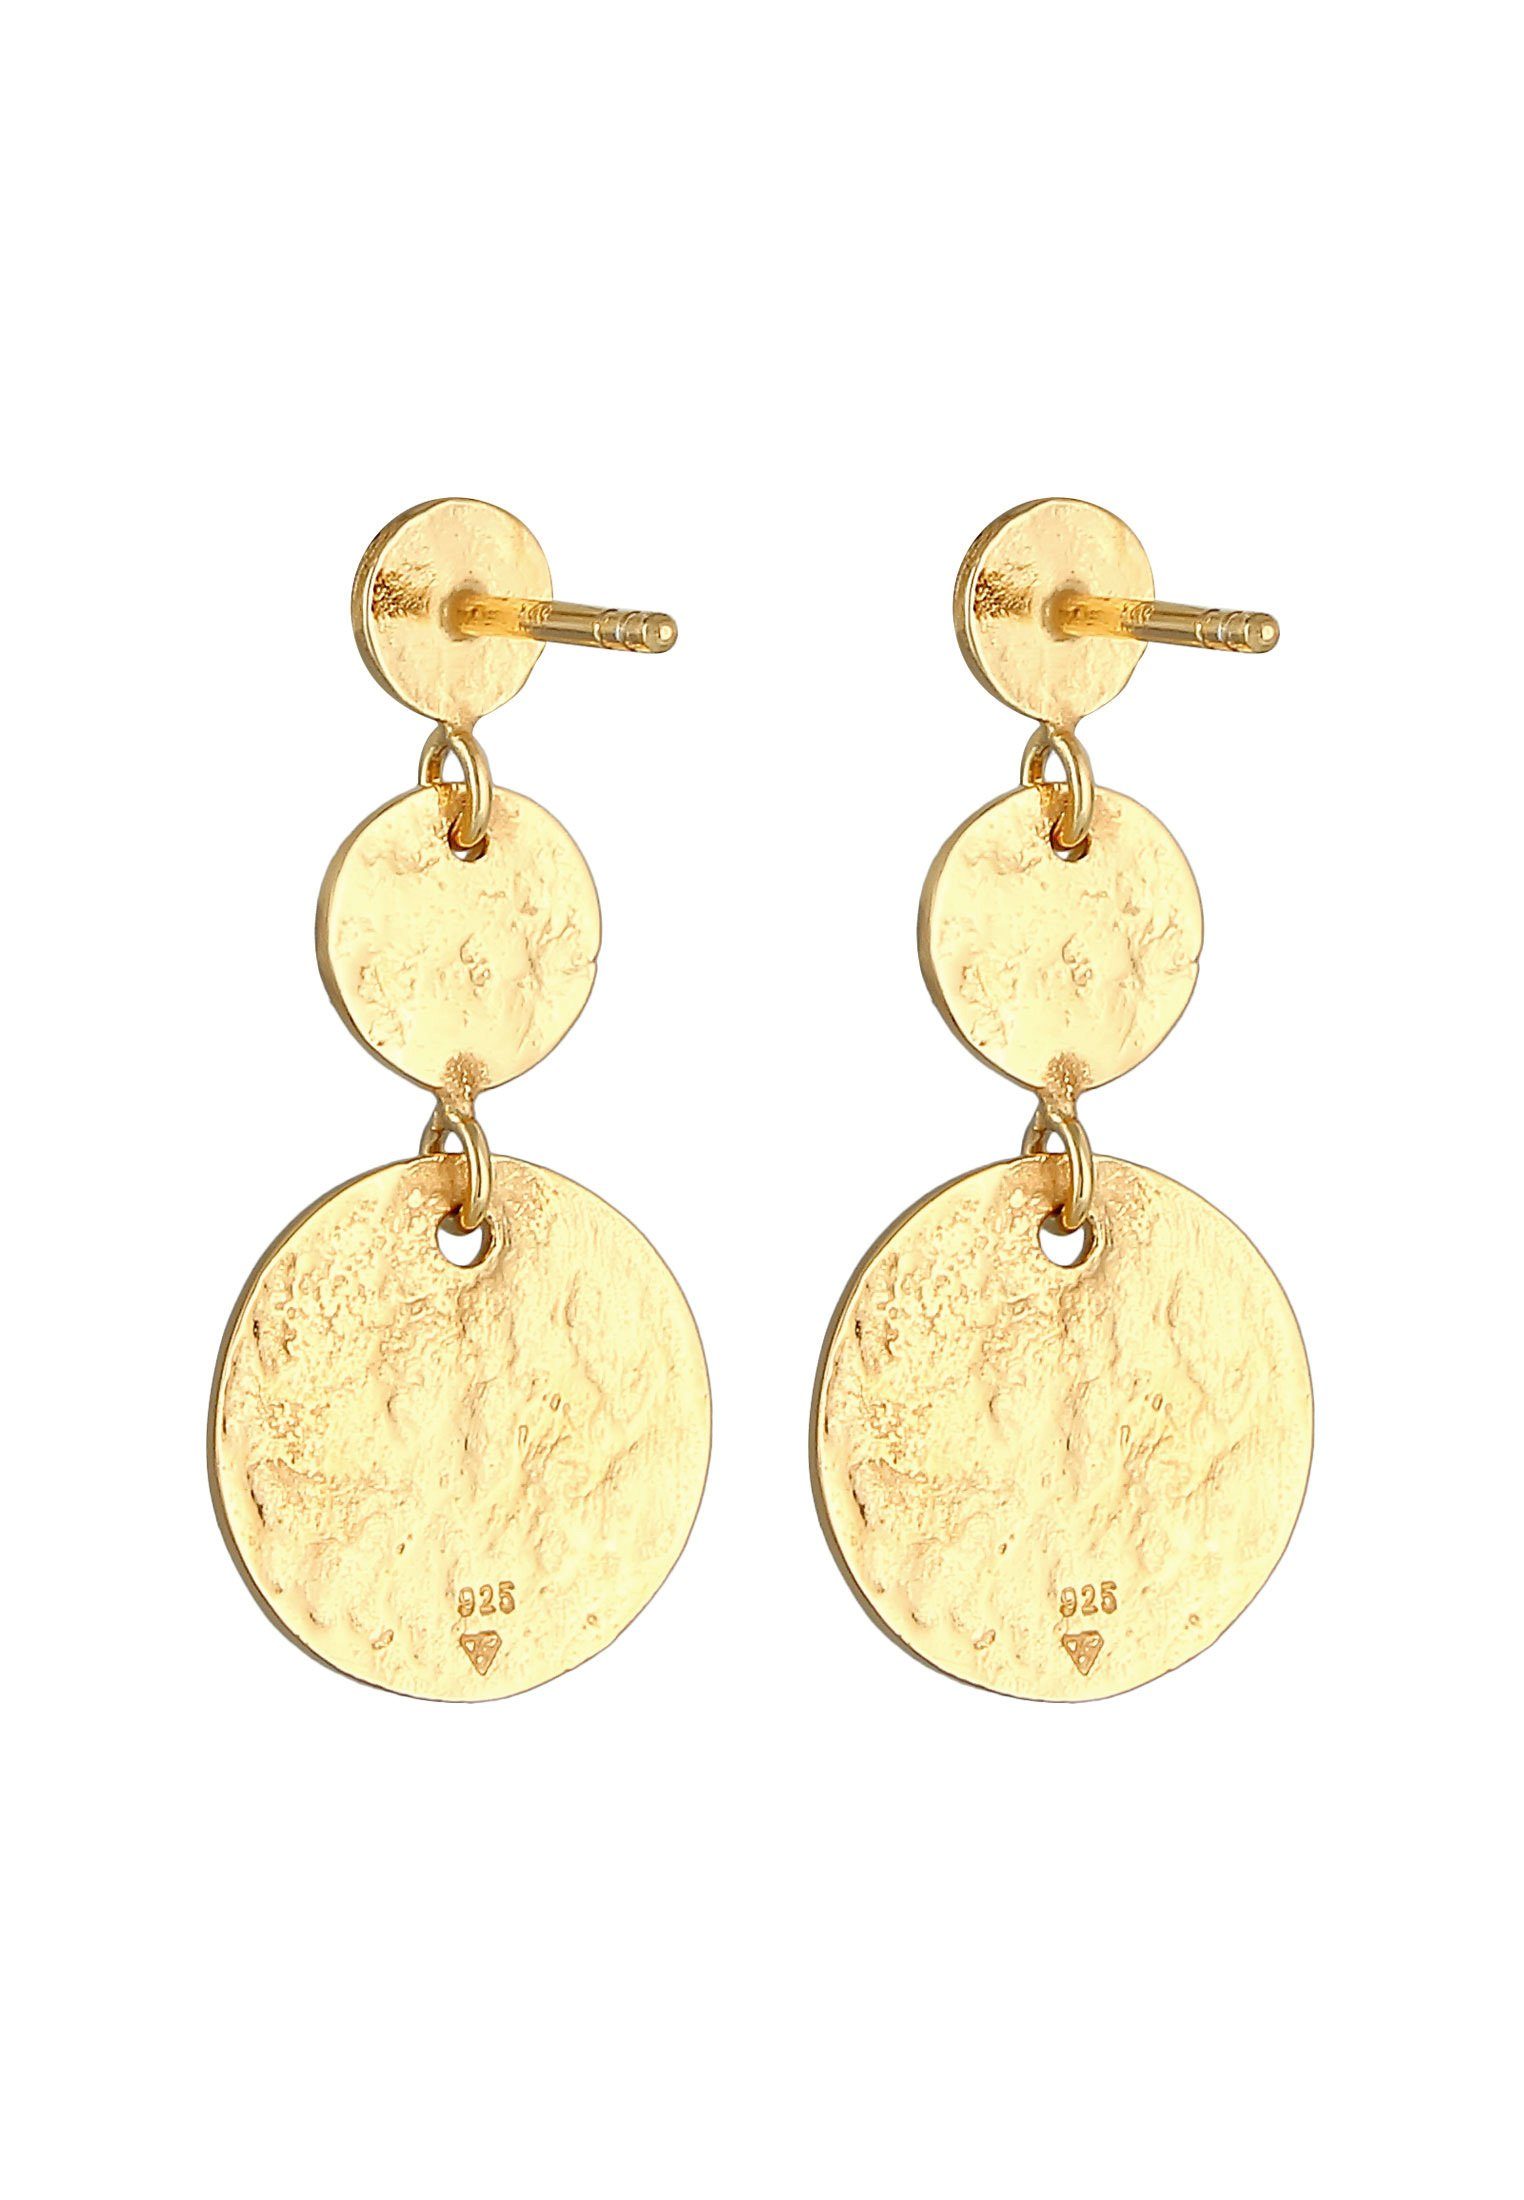 Elli Paar Silber Gold Ohrhänger Antique Vintage Plättchen Ohrstecker 925